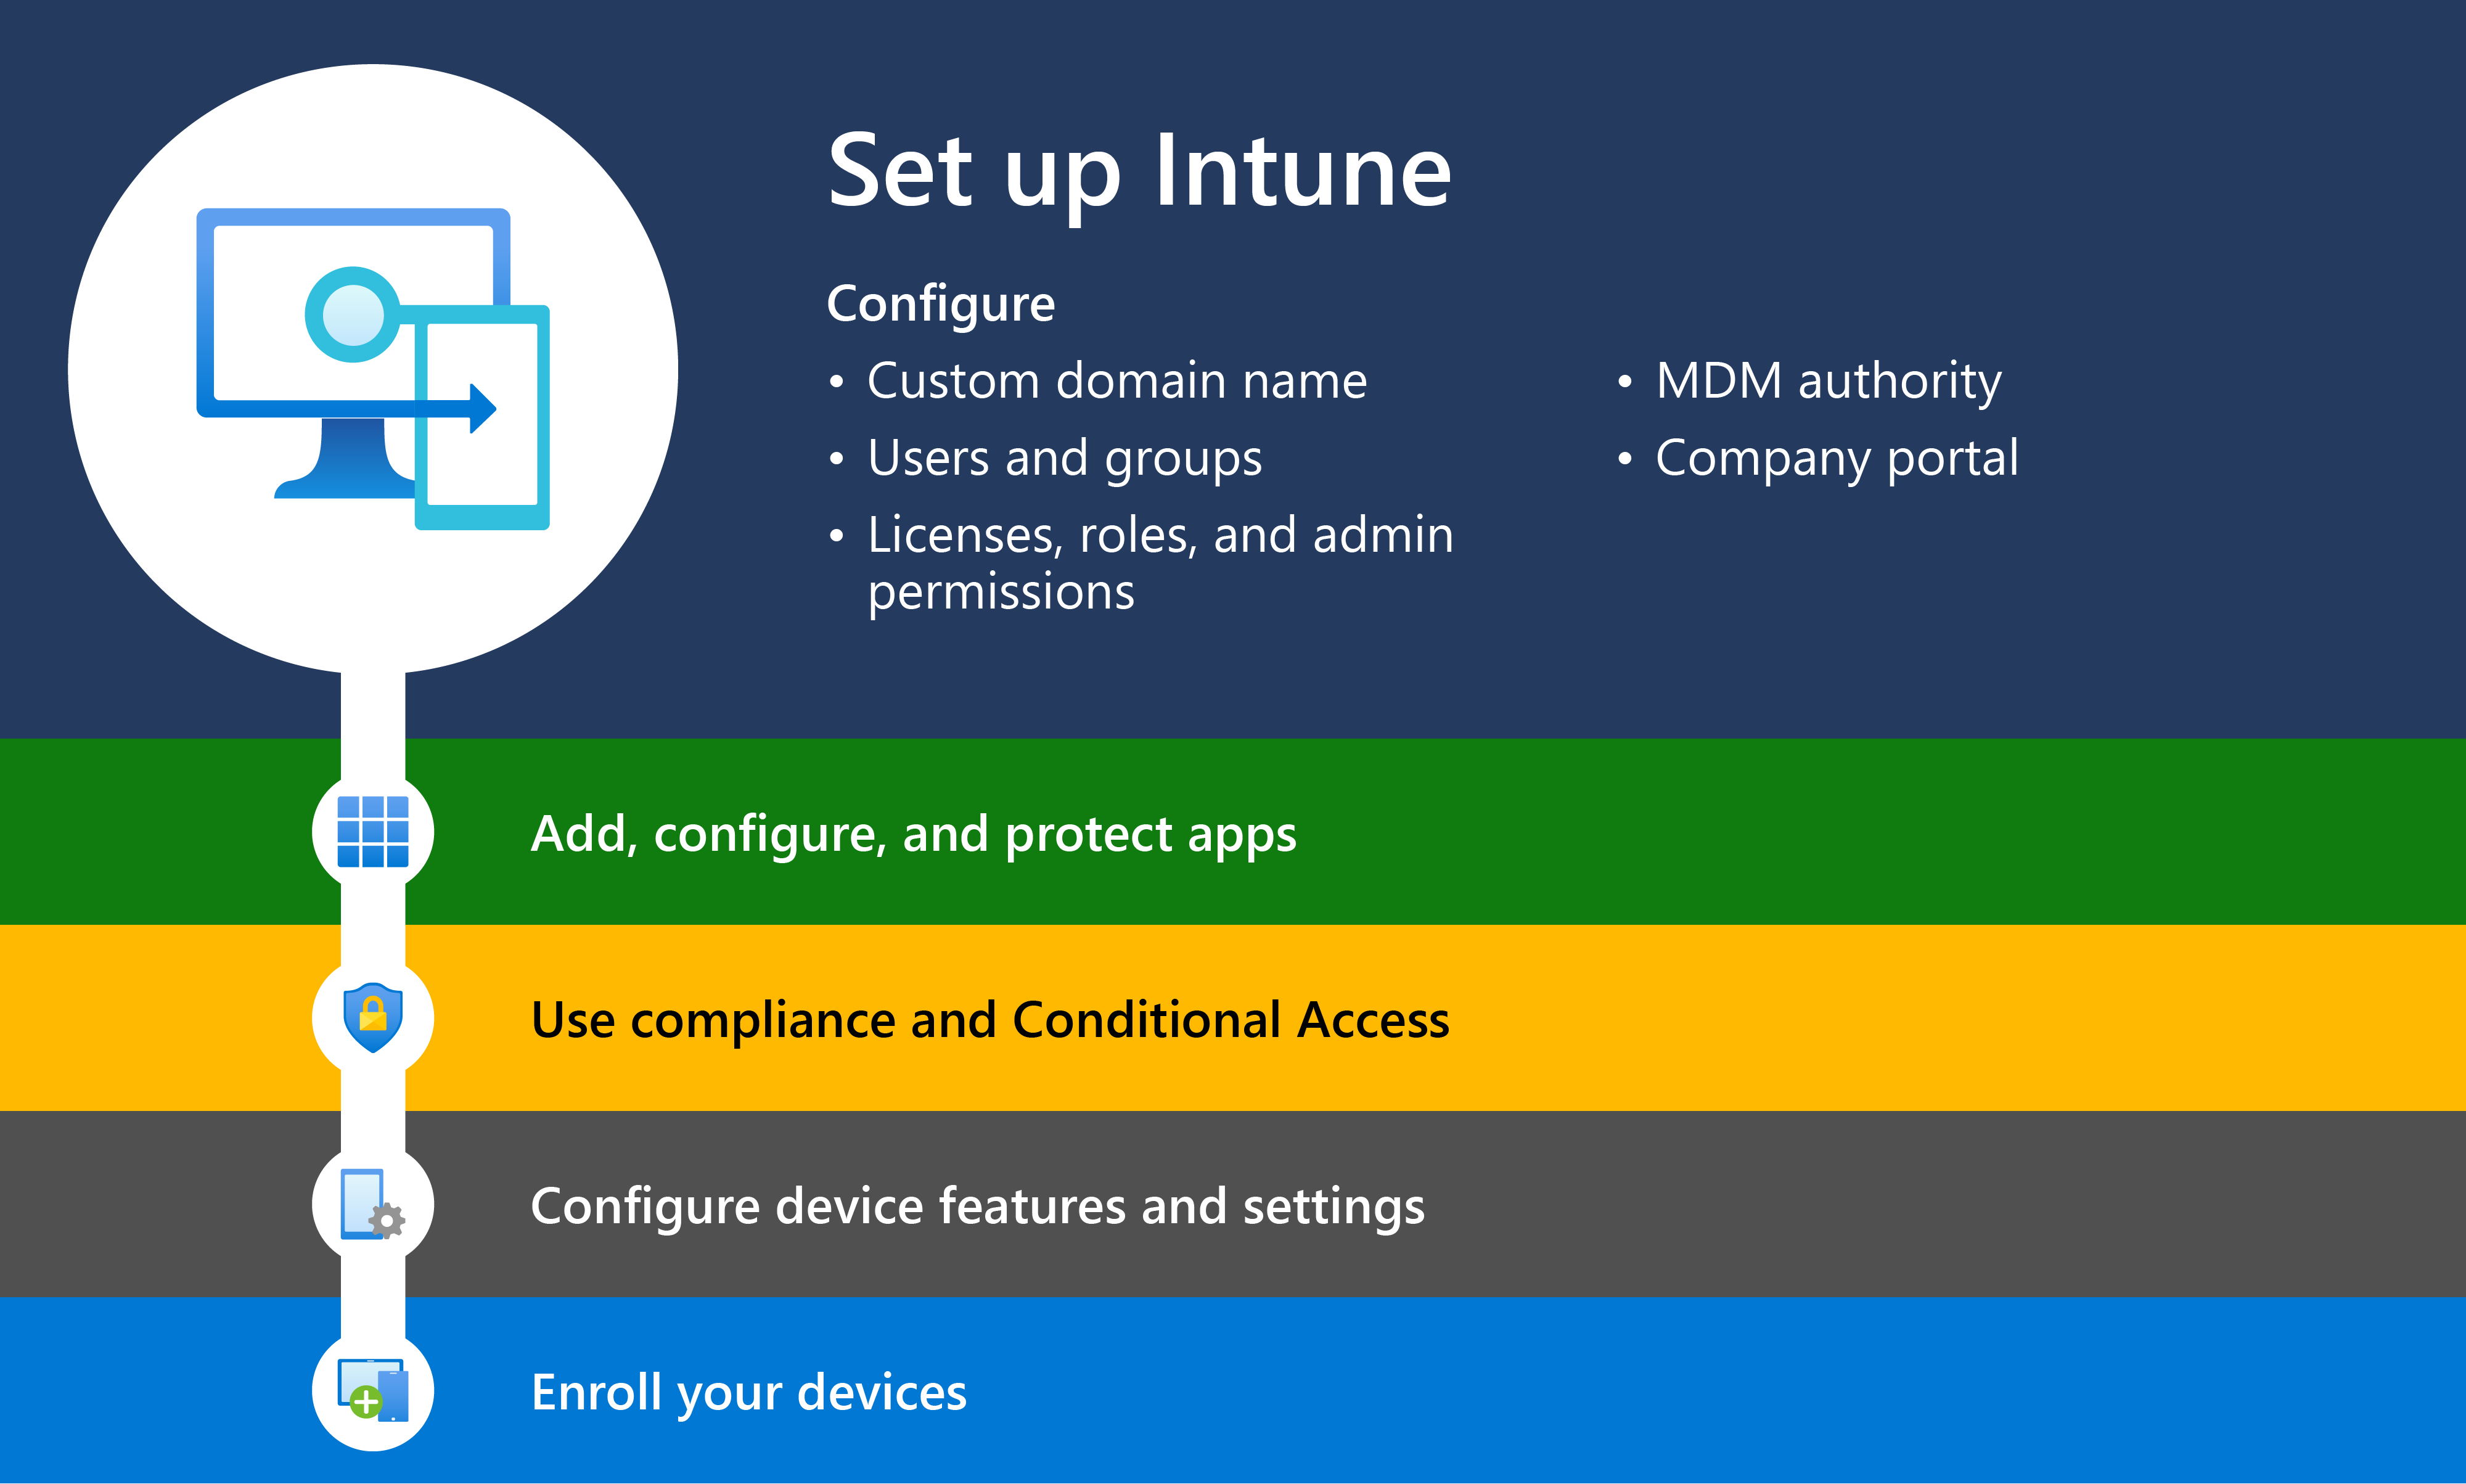 Microsoft Intuneを設定する手順 1 を使用した Intune の概要を示す図。